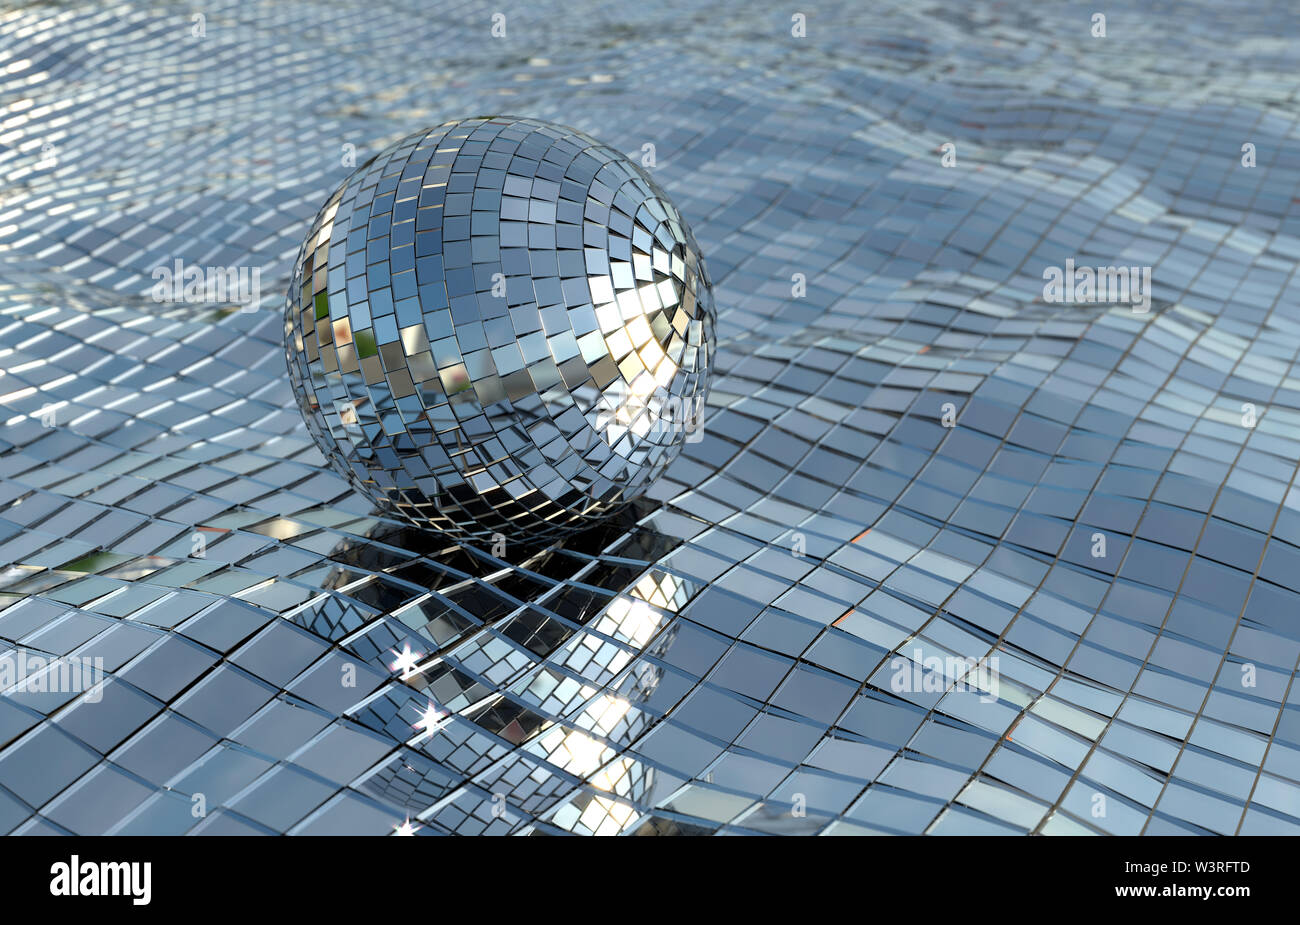 Disco ball (oder Ball Spiegel) schwimmend auf einem Spiegel Meer in der  Sonne, bereit für eine Kühlung disco schwimmen? Hintergrundbild Flyer  Poster Stockfotografie - Alamy